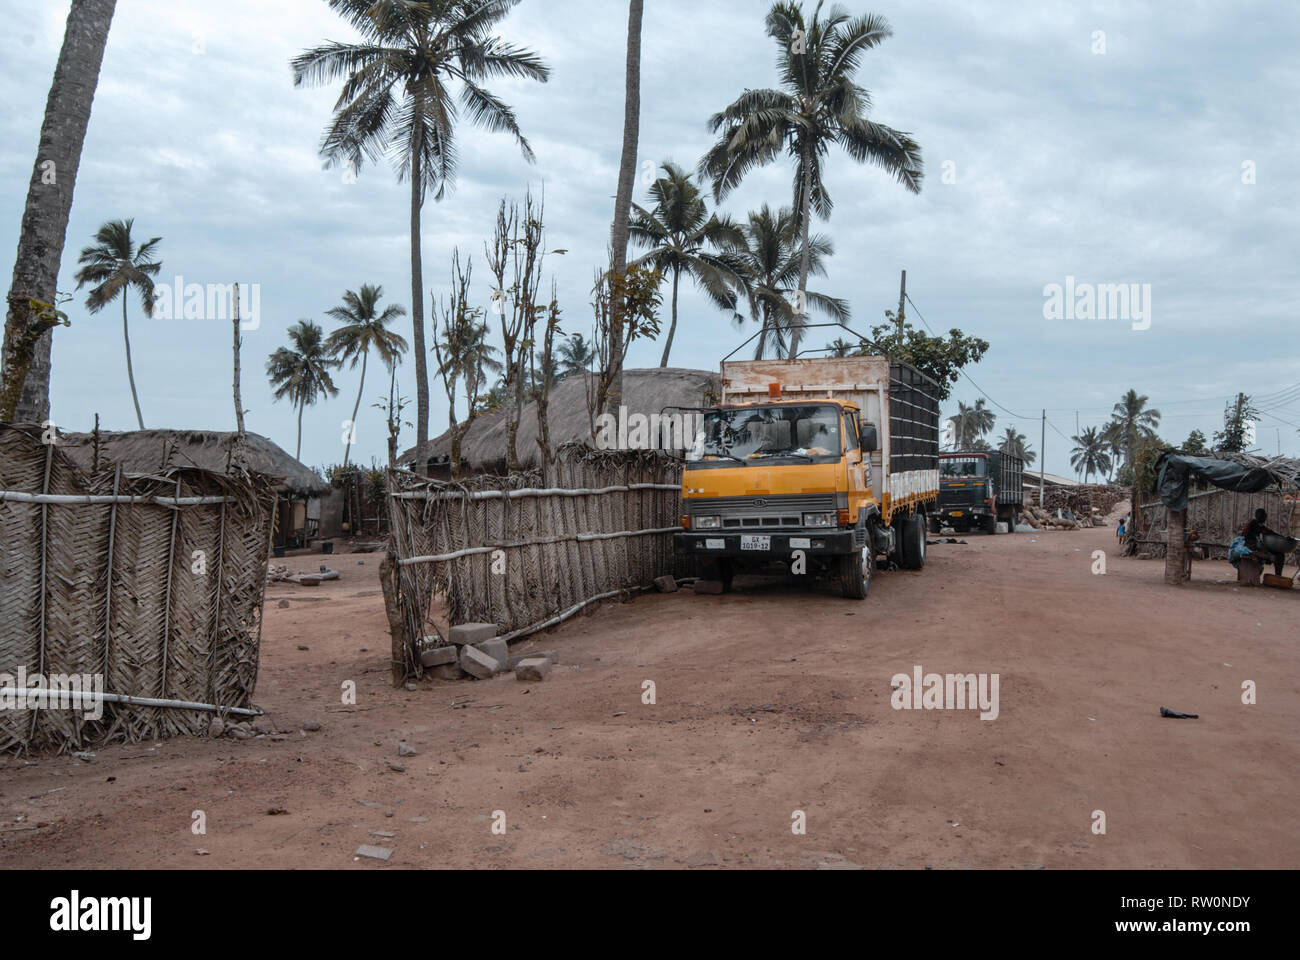 Un camion jaune garée à une rue d'une banlieue de ville tropicale de Elmina, Ghana Banque D'Images